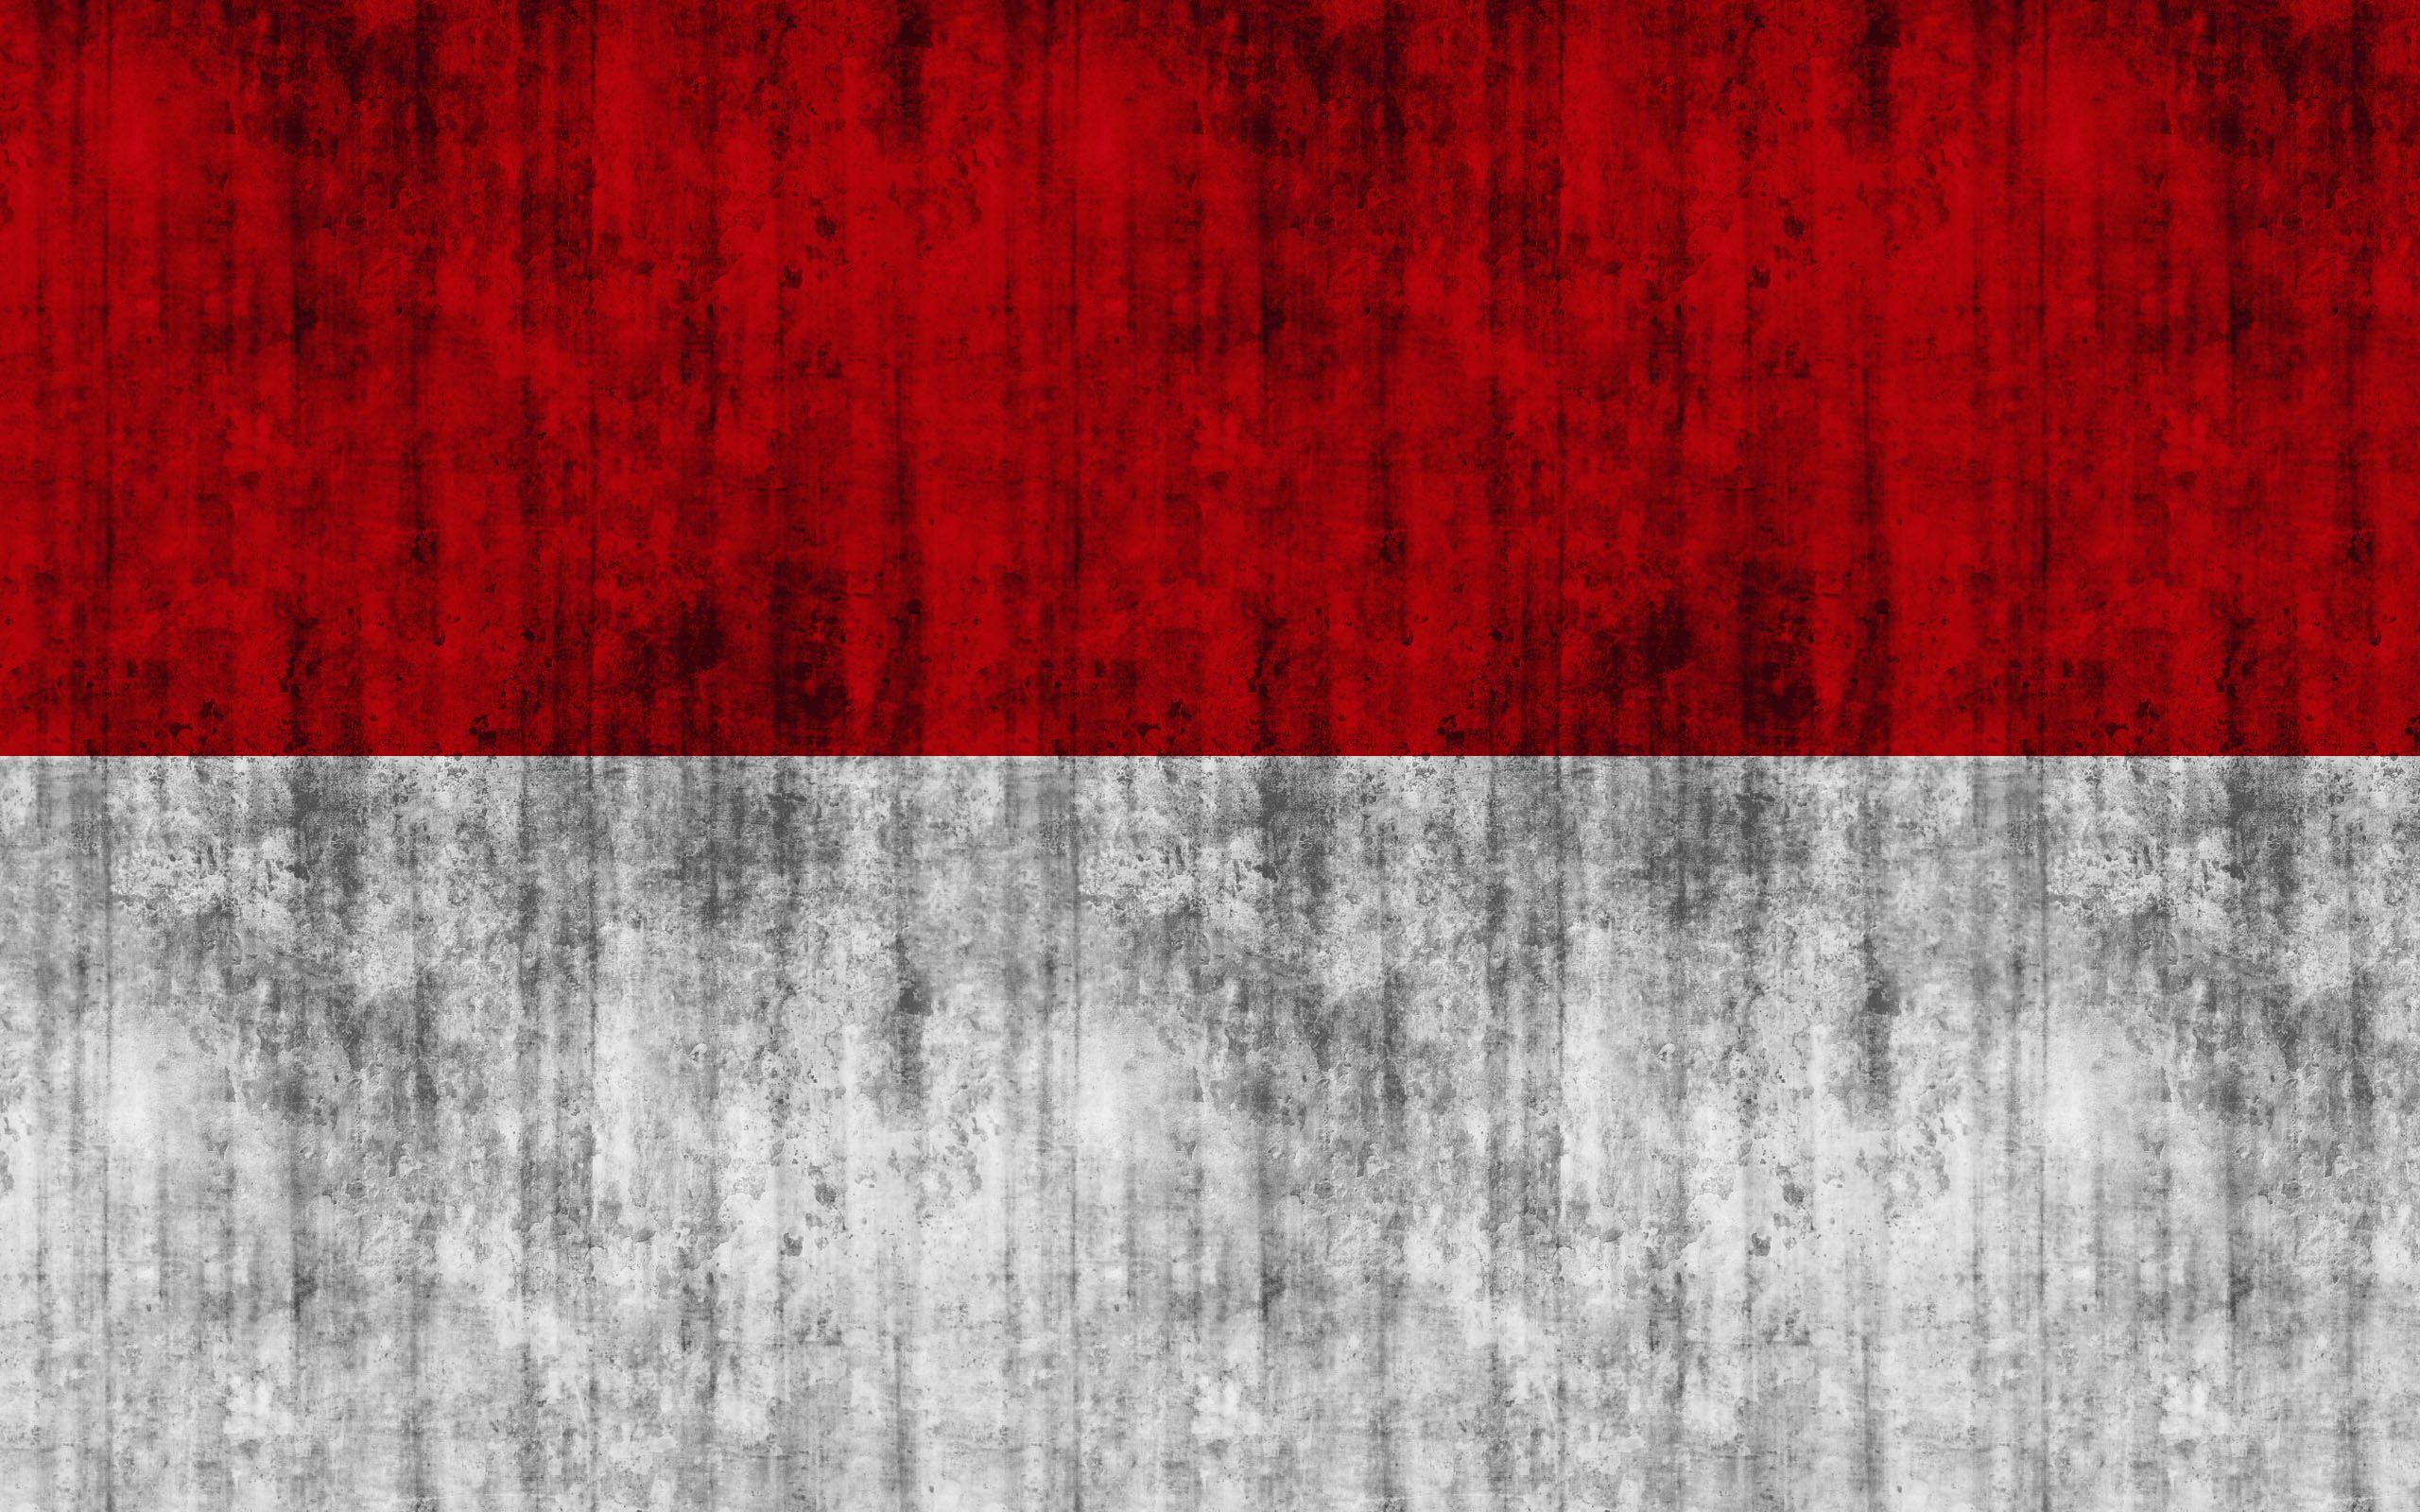 75 Gambar Bendera Merah Putih Hd Gambar Pixabay Images